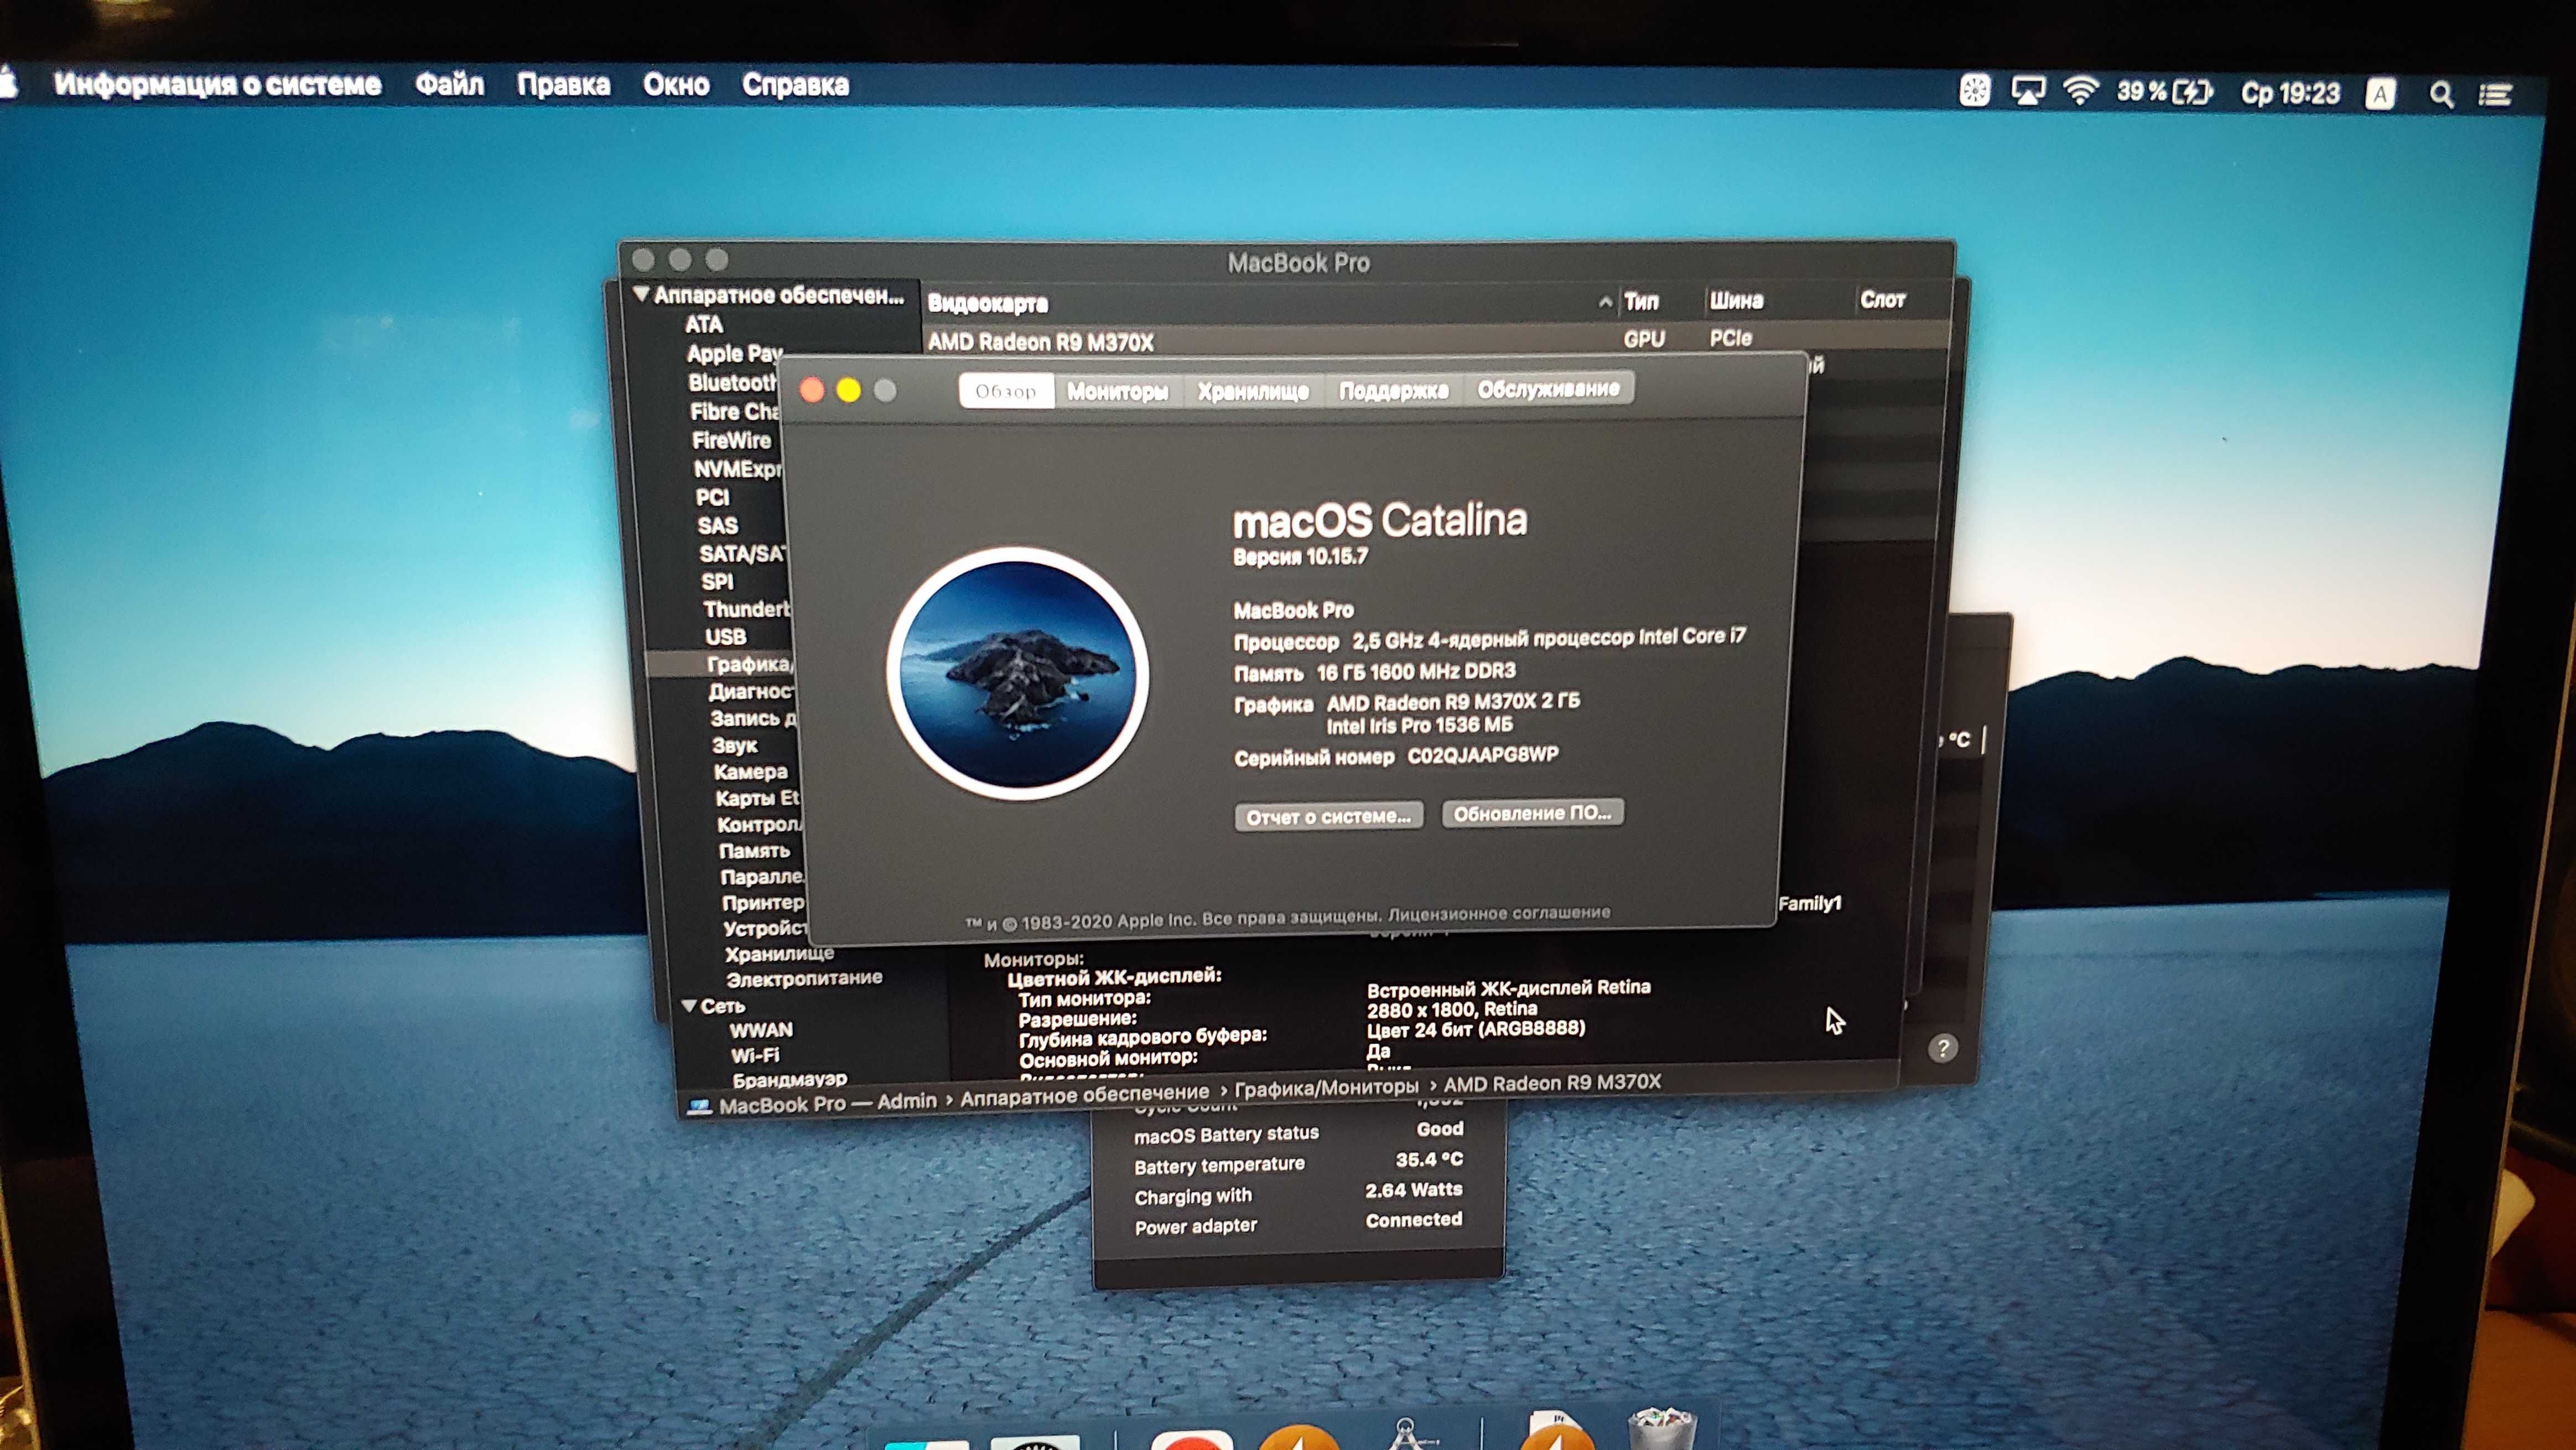 Macbook pro 15 2.2 i7 16gb/512gb mjlt2 2015 amd radeon 2gb